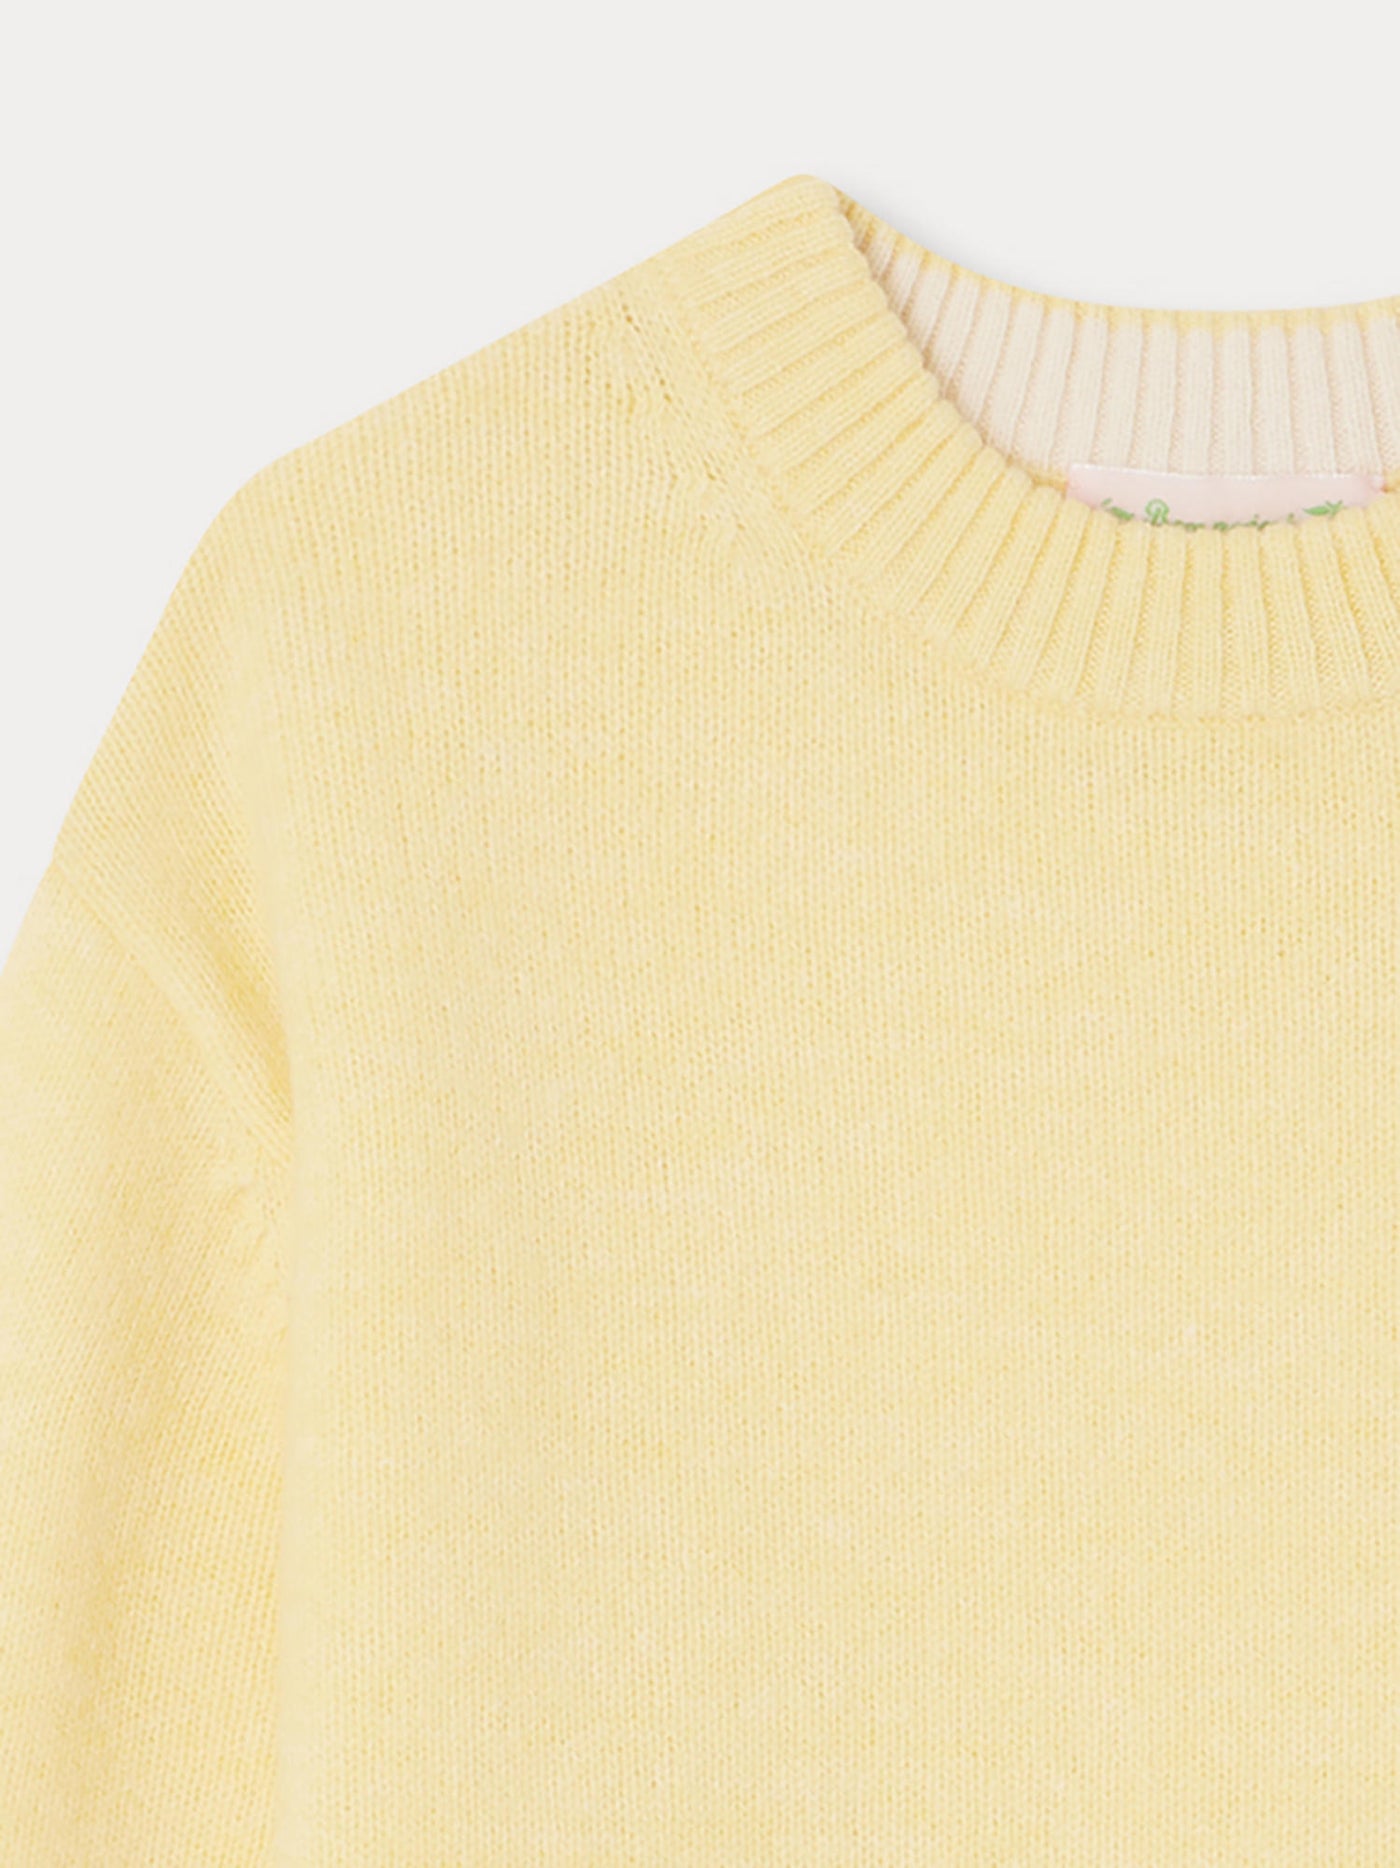 Anumati Sweater yellow